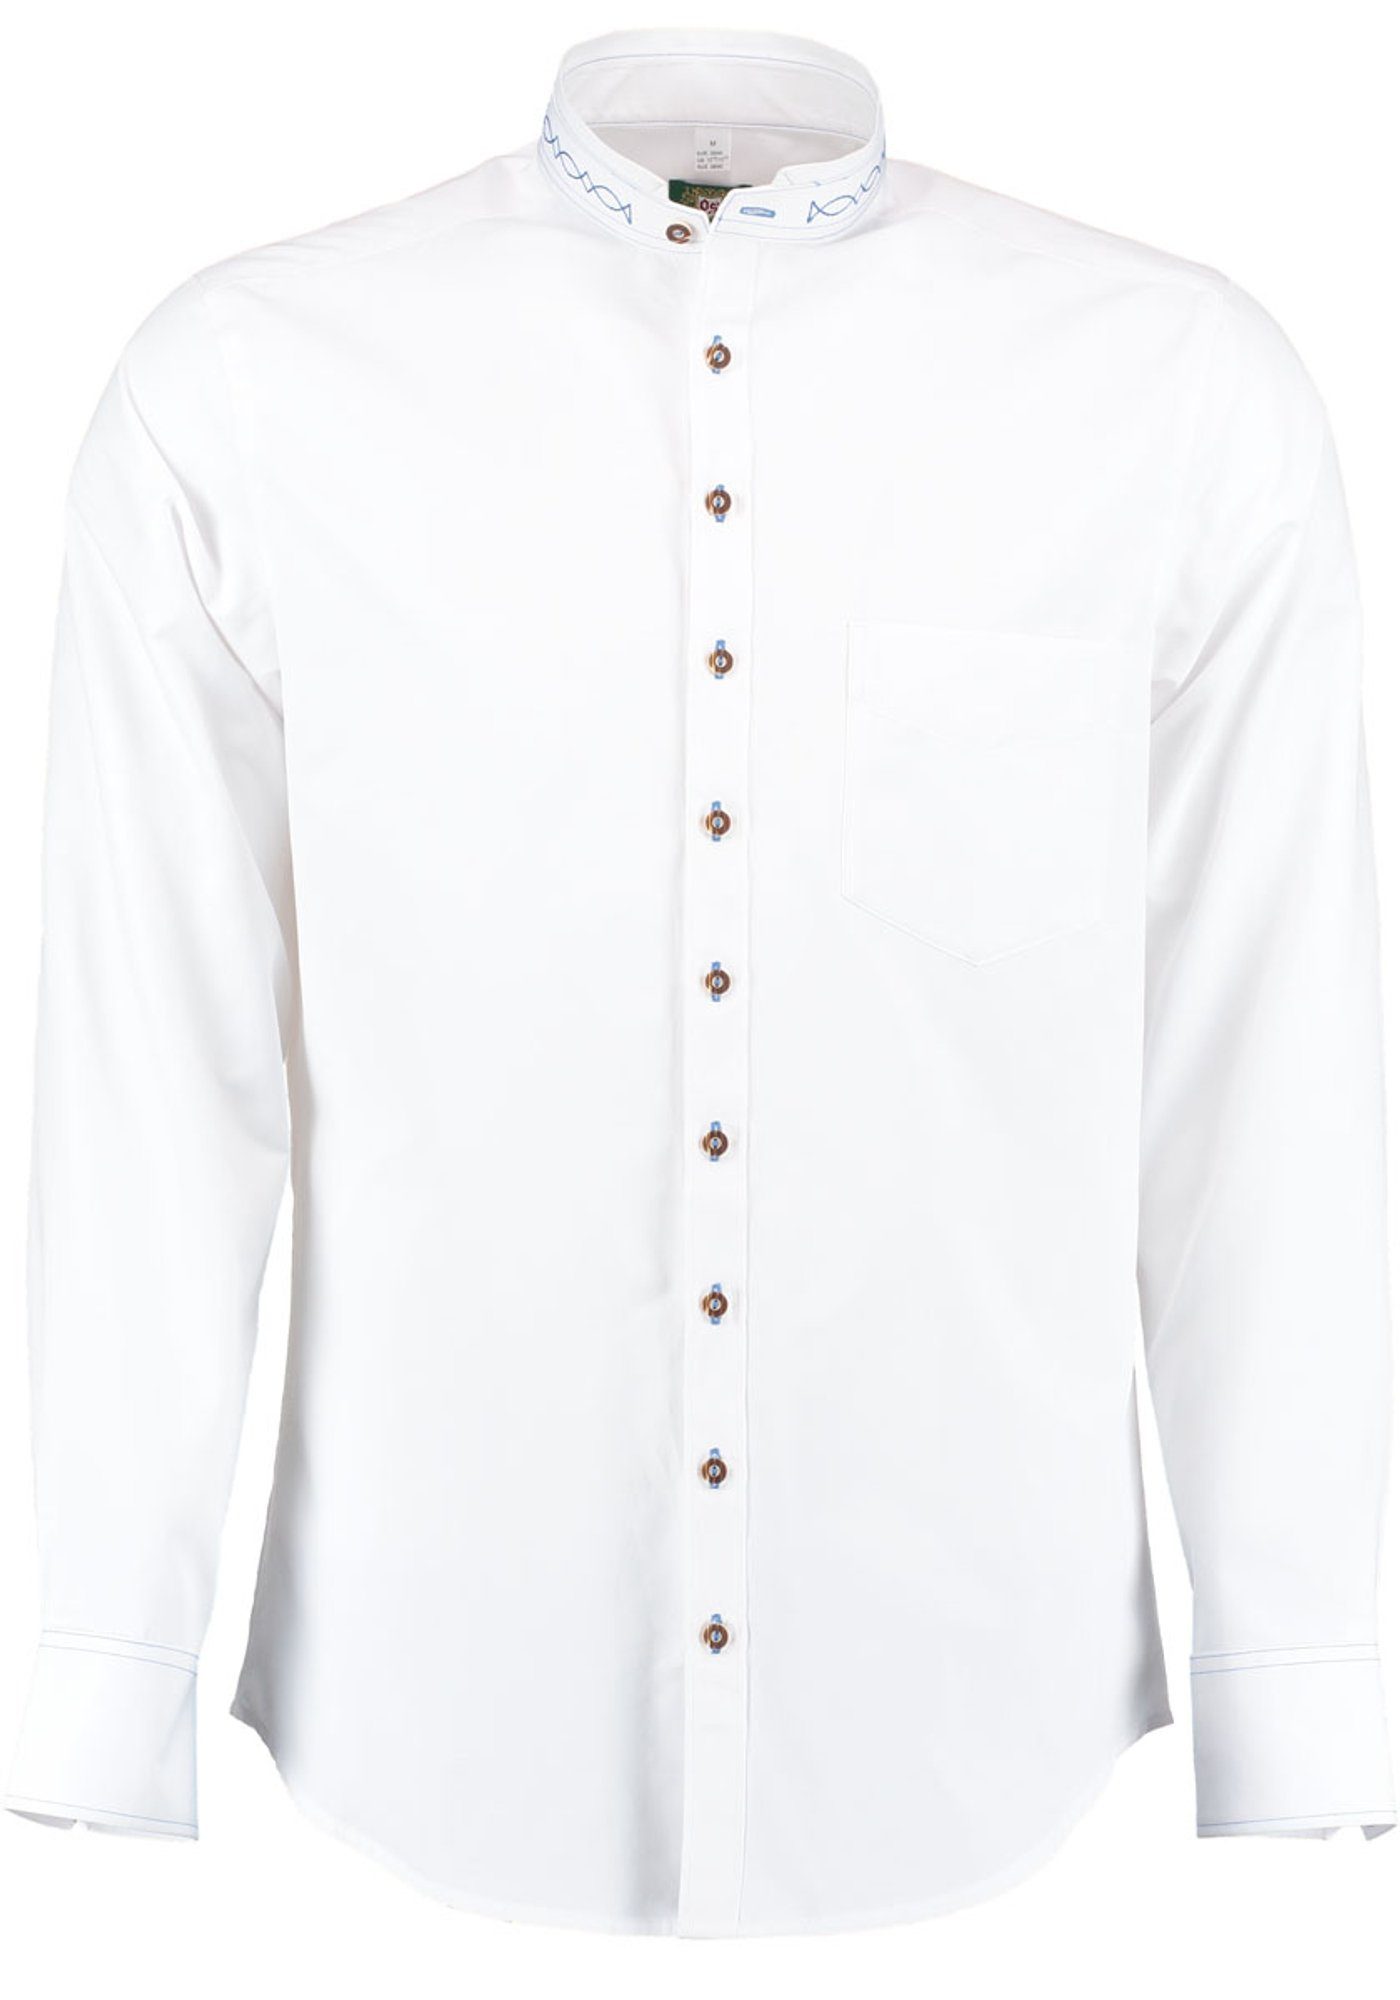 OS-Trachten Trachtenhemd Storax Langarmhemd mit Stickerei auf dem Stehkragen weiß-mittelblau